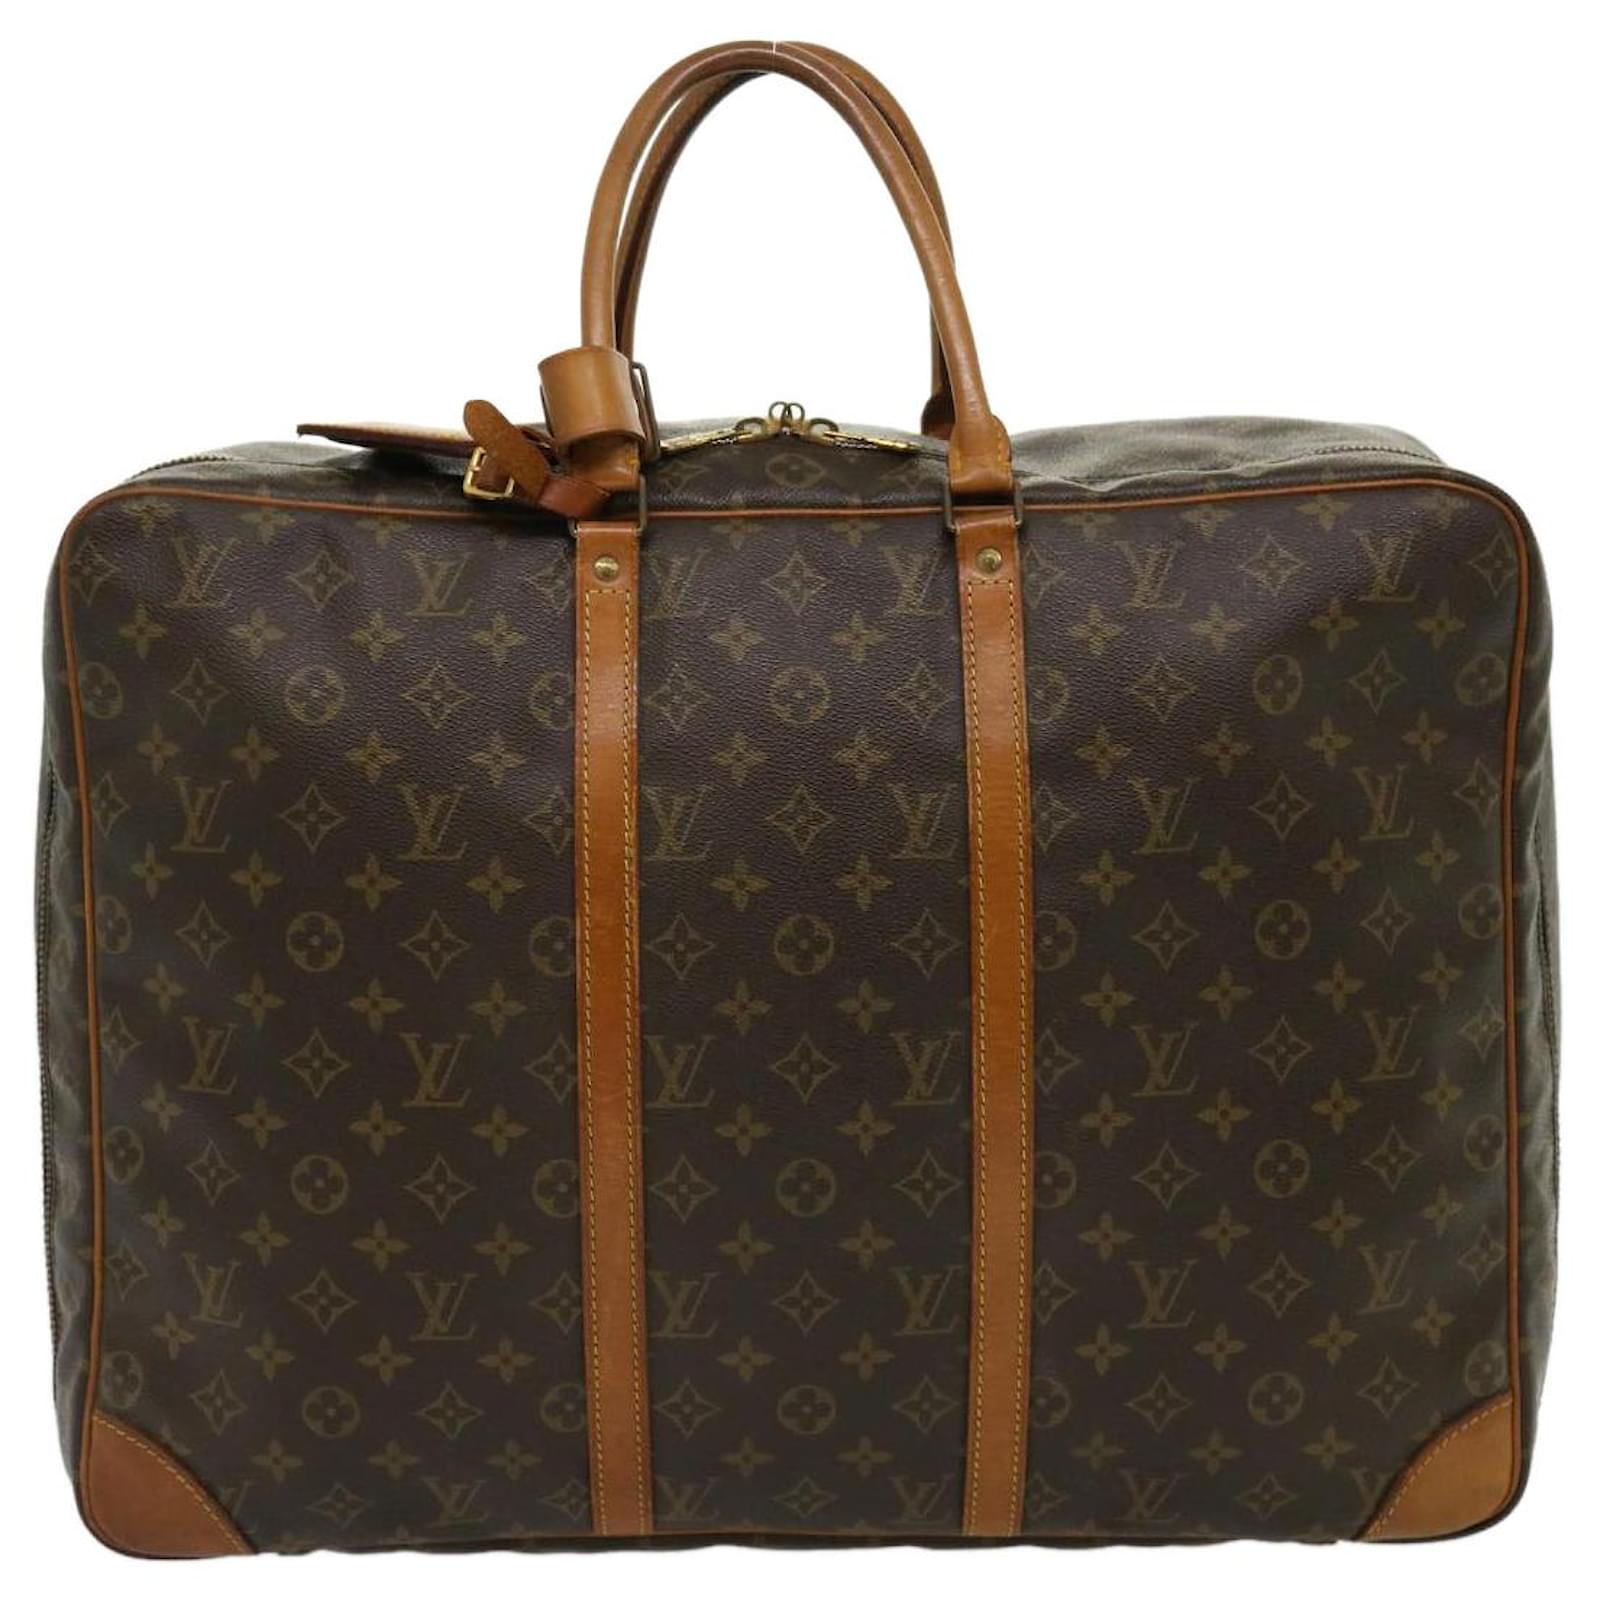 Louis Vuitton Sirius 50 Travel Bag – purchasegarments